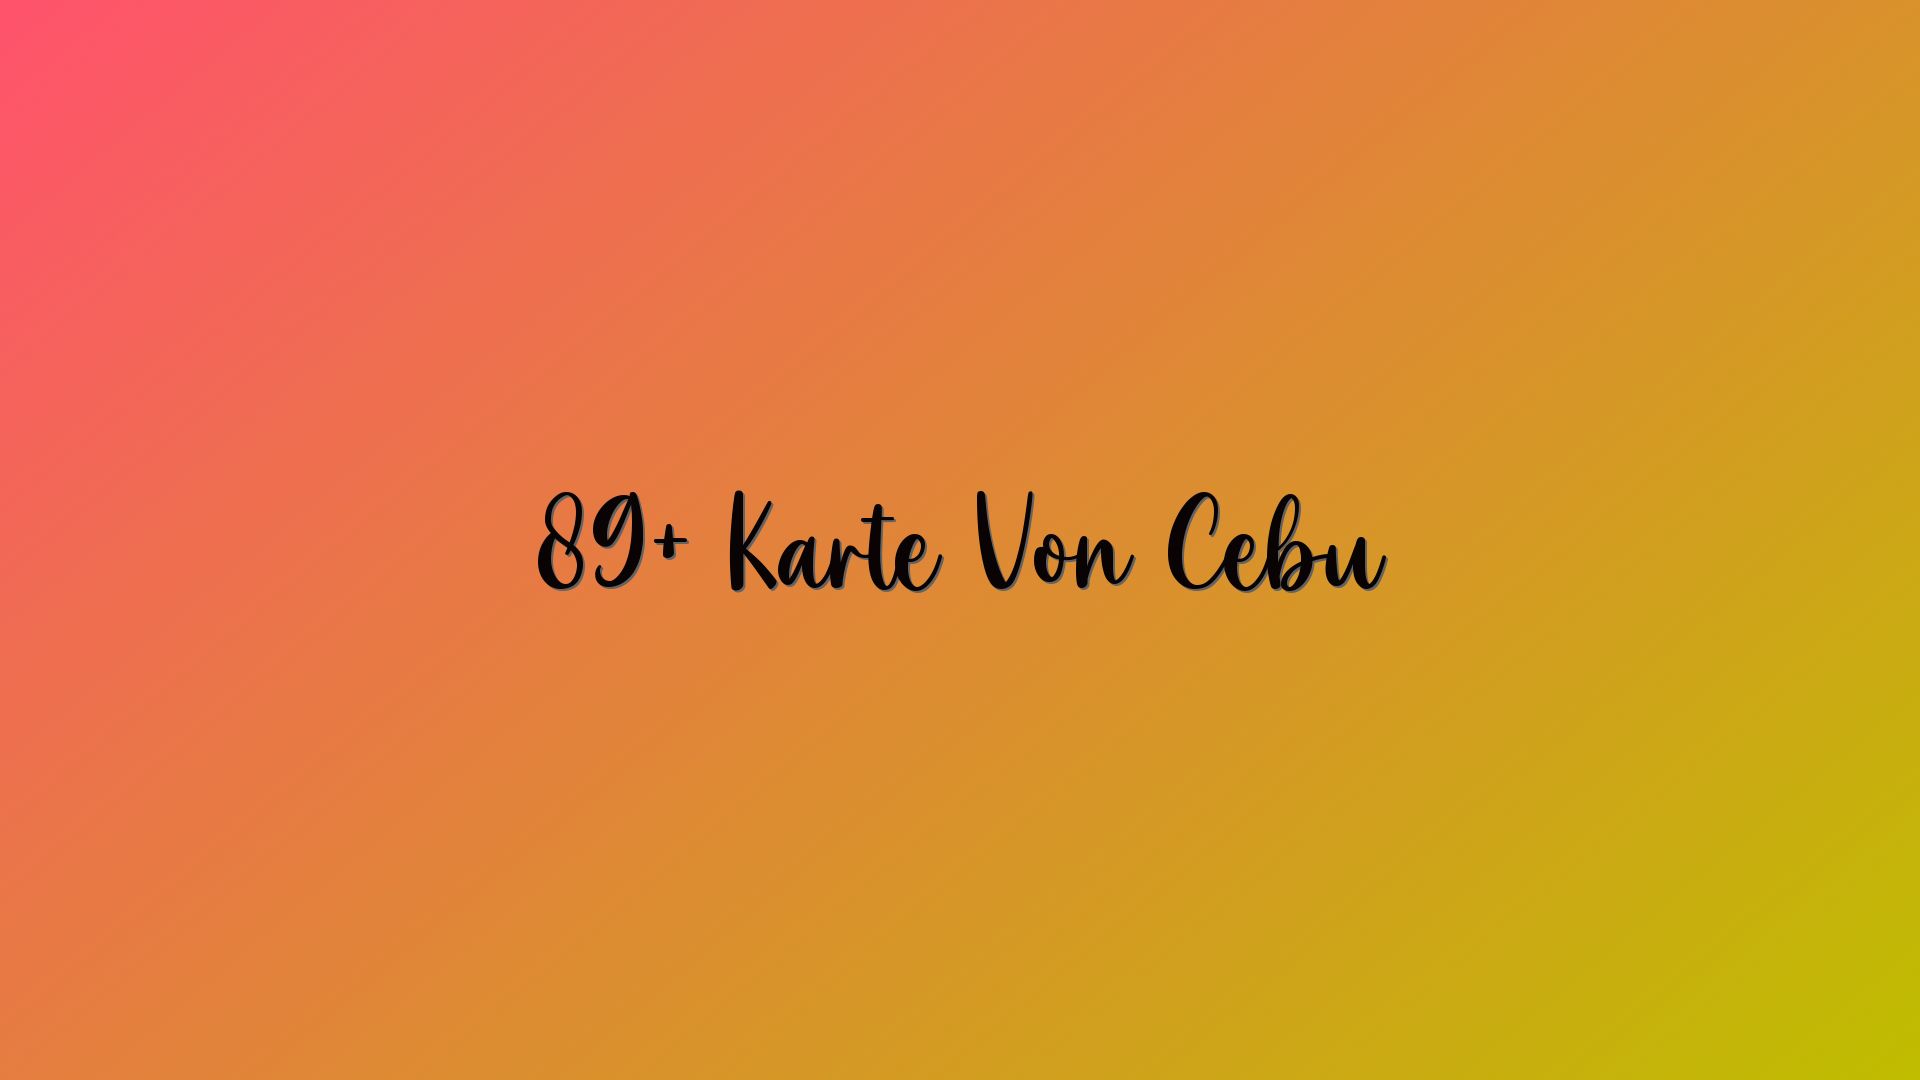 89+ Karte Von Cebu